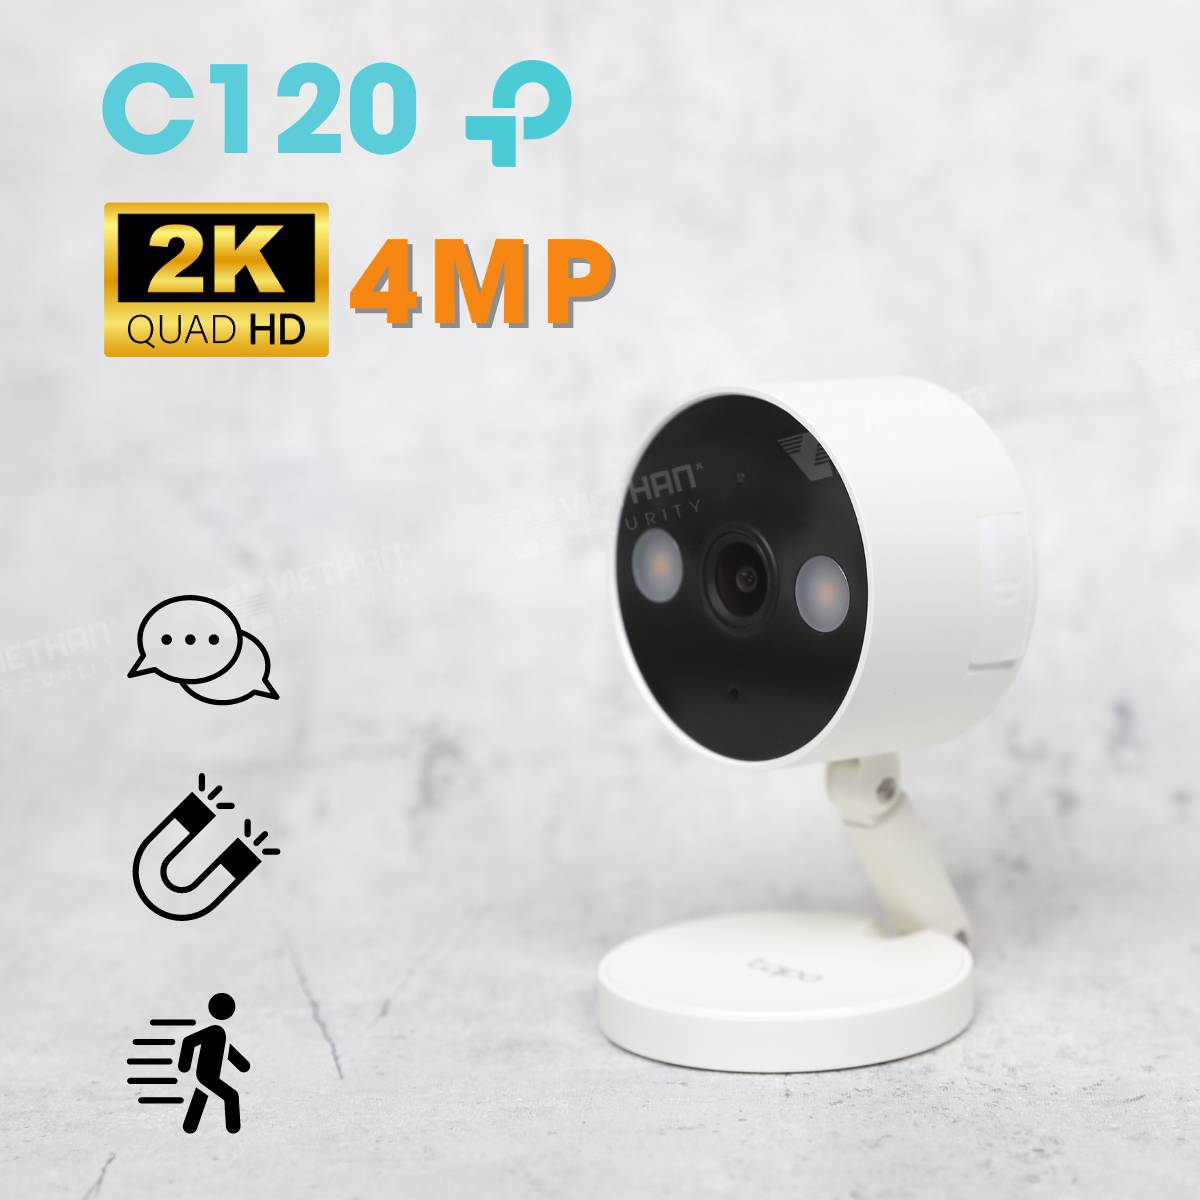 Camera wifi không dây TP-Link Tapo C120 2K 4MP, phát hiện thông minh 